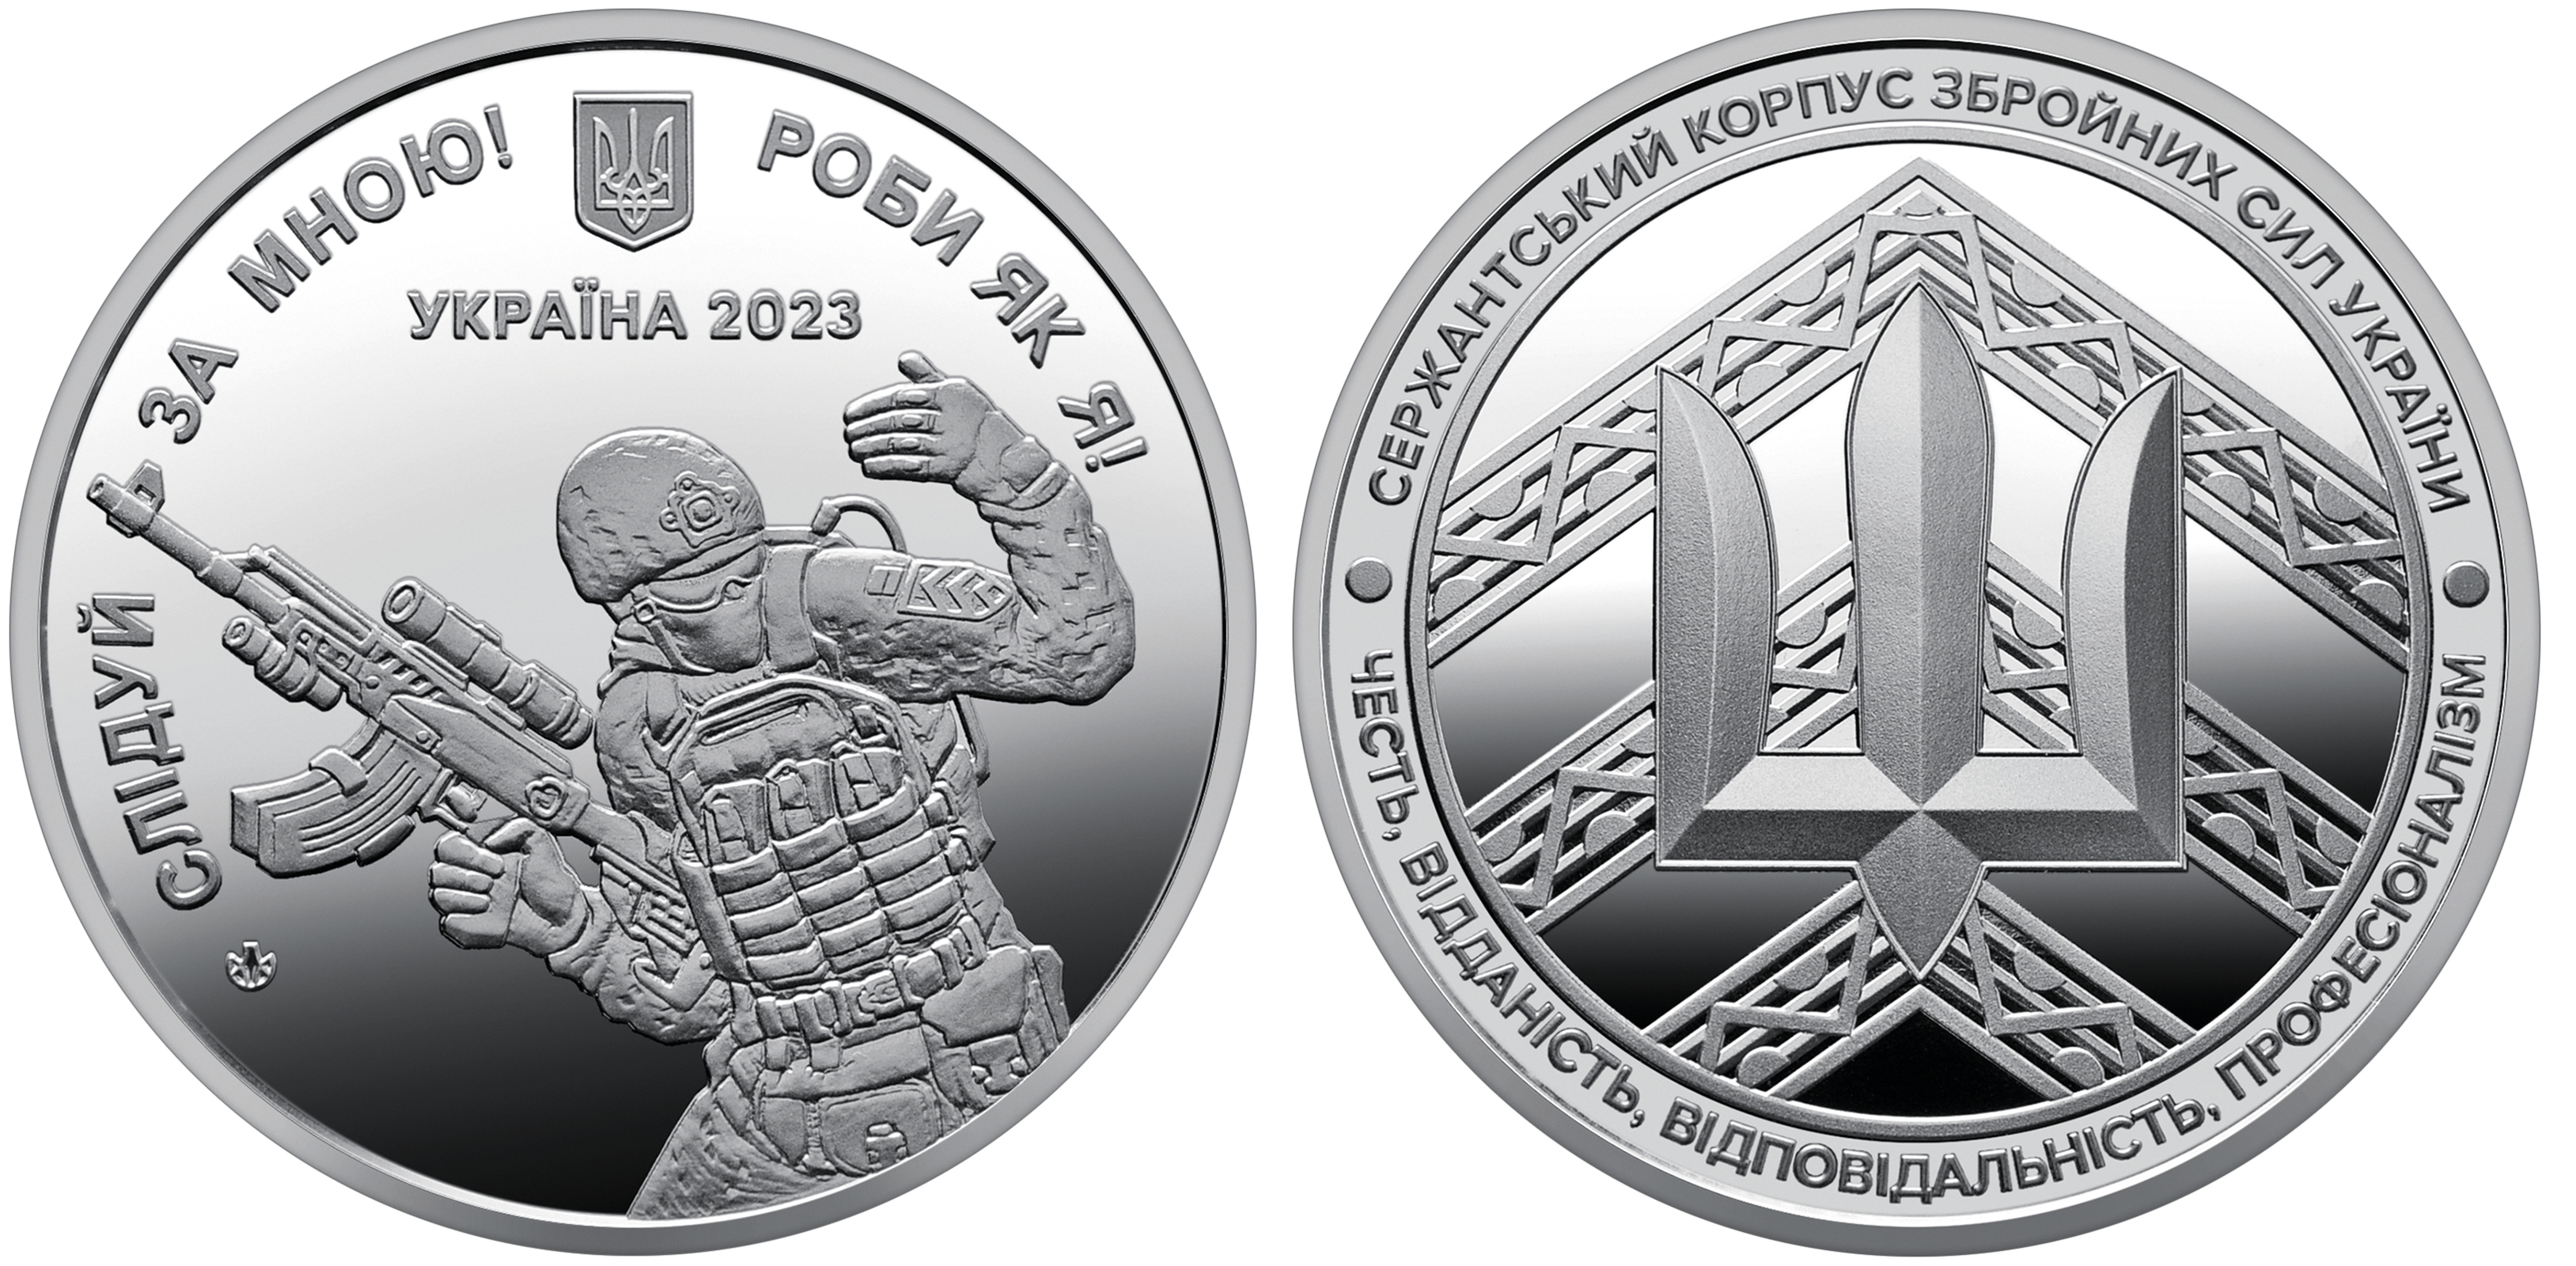 Продаж ювілейних монет від МТБ БАНК • купити ювілейні монети в Україні в MTB БАНК - фото 7 - mtb.ua